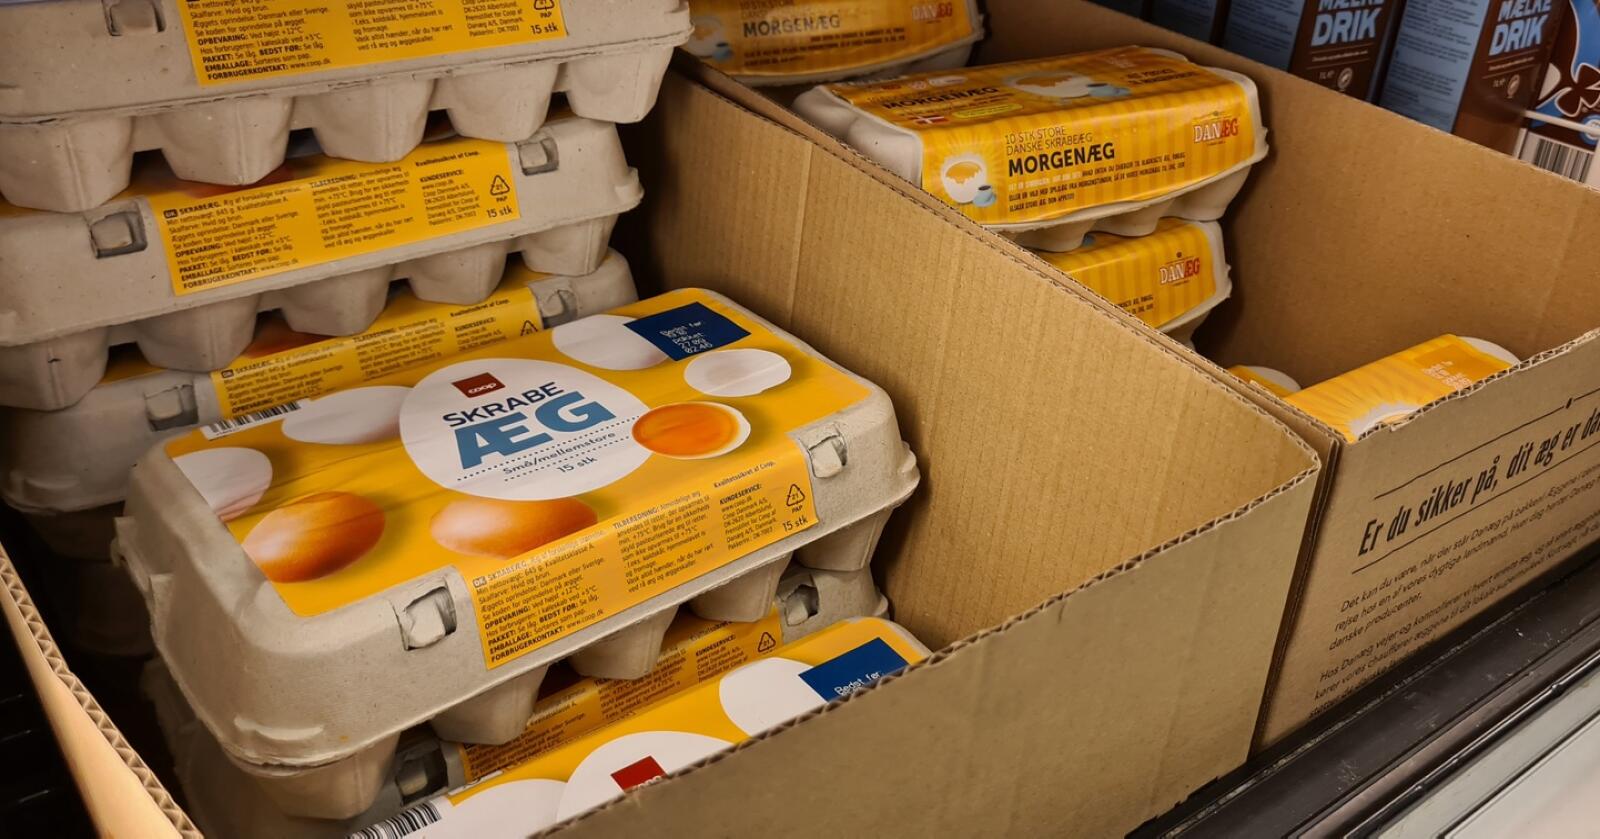 Danske eggprodusenter har allerede gått konkurs i forbindelse med den kraftige kostnadsveksten. Flere henger i en tynn tråd og ber om økte priser. Foto: Jon-Fredrik Bækgaard Klausen